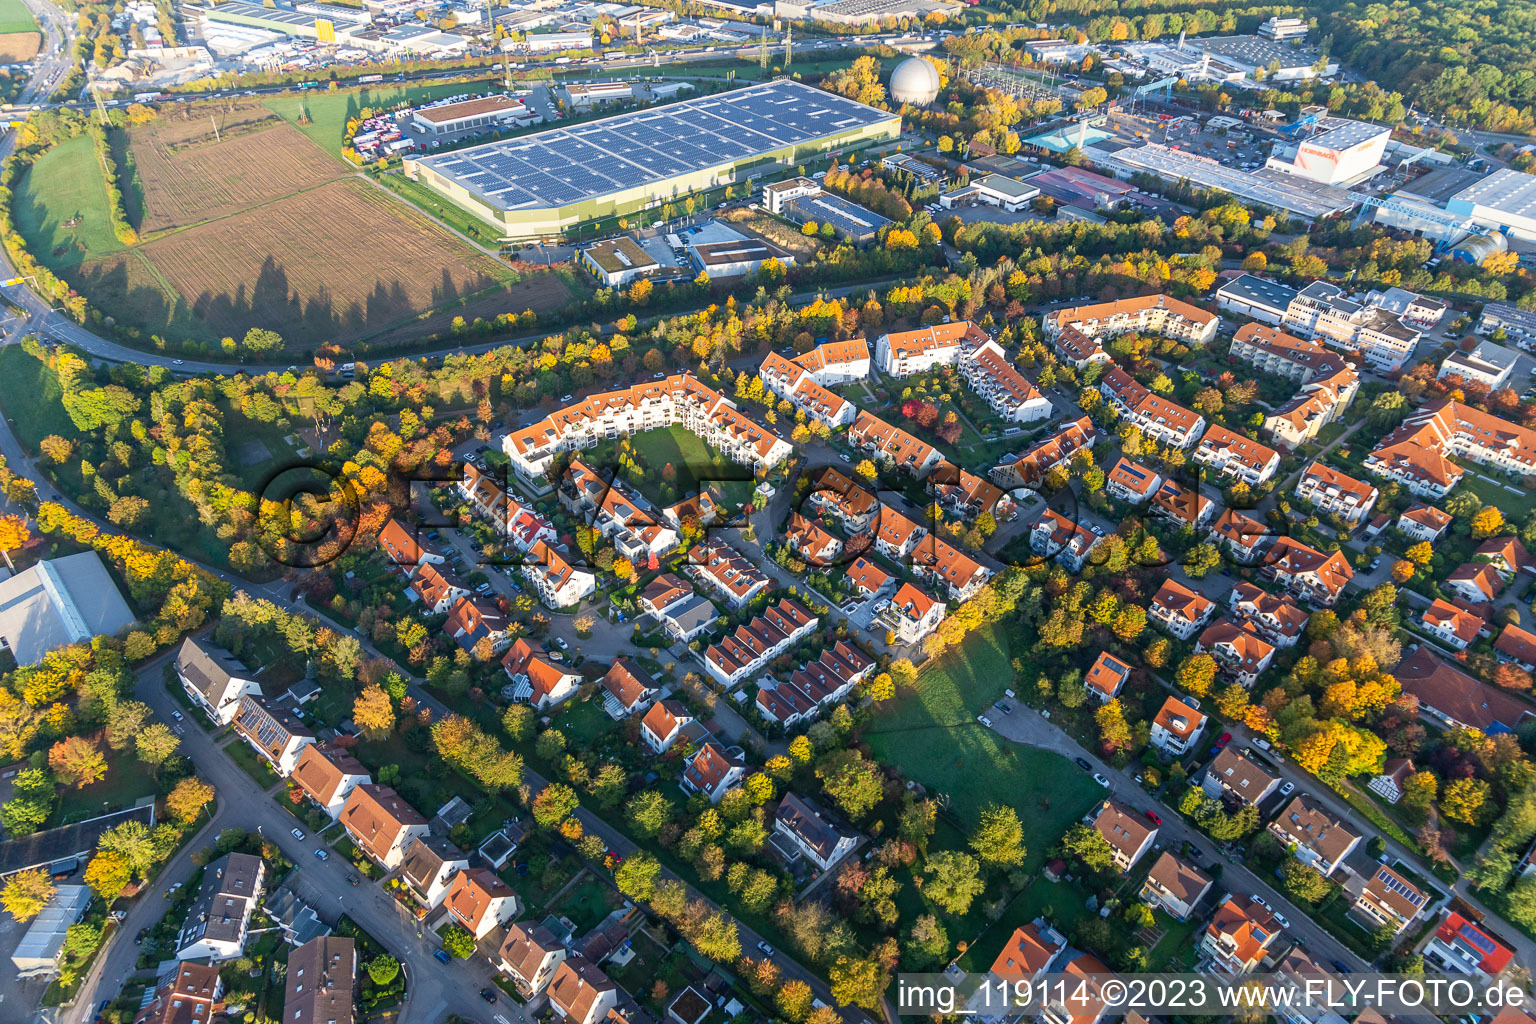 Photographie aérienne de Quartier Pflugfelden in Ludwigsburg dans le département Bade-Wurtemberg, Allemagne